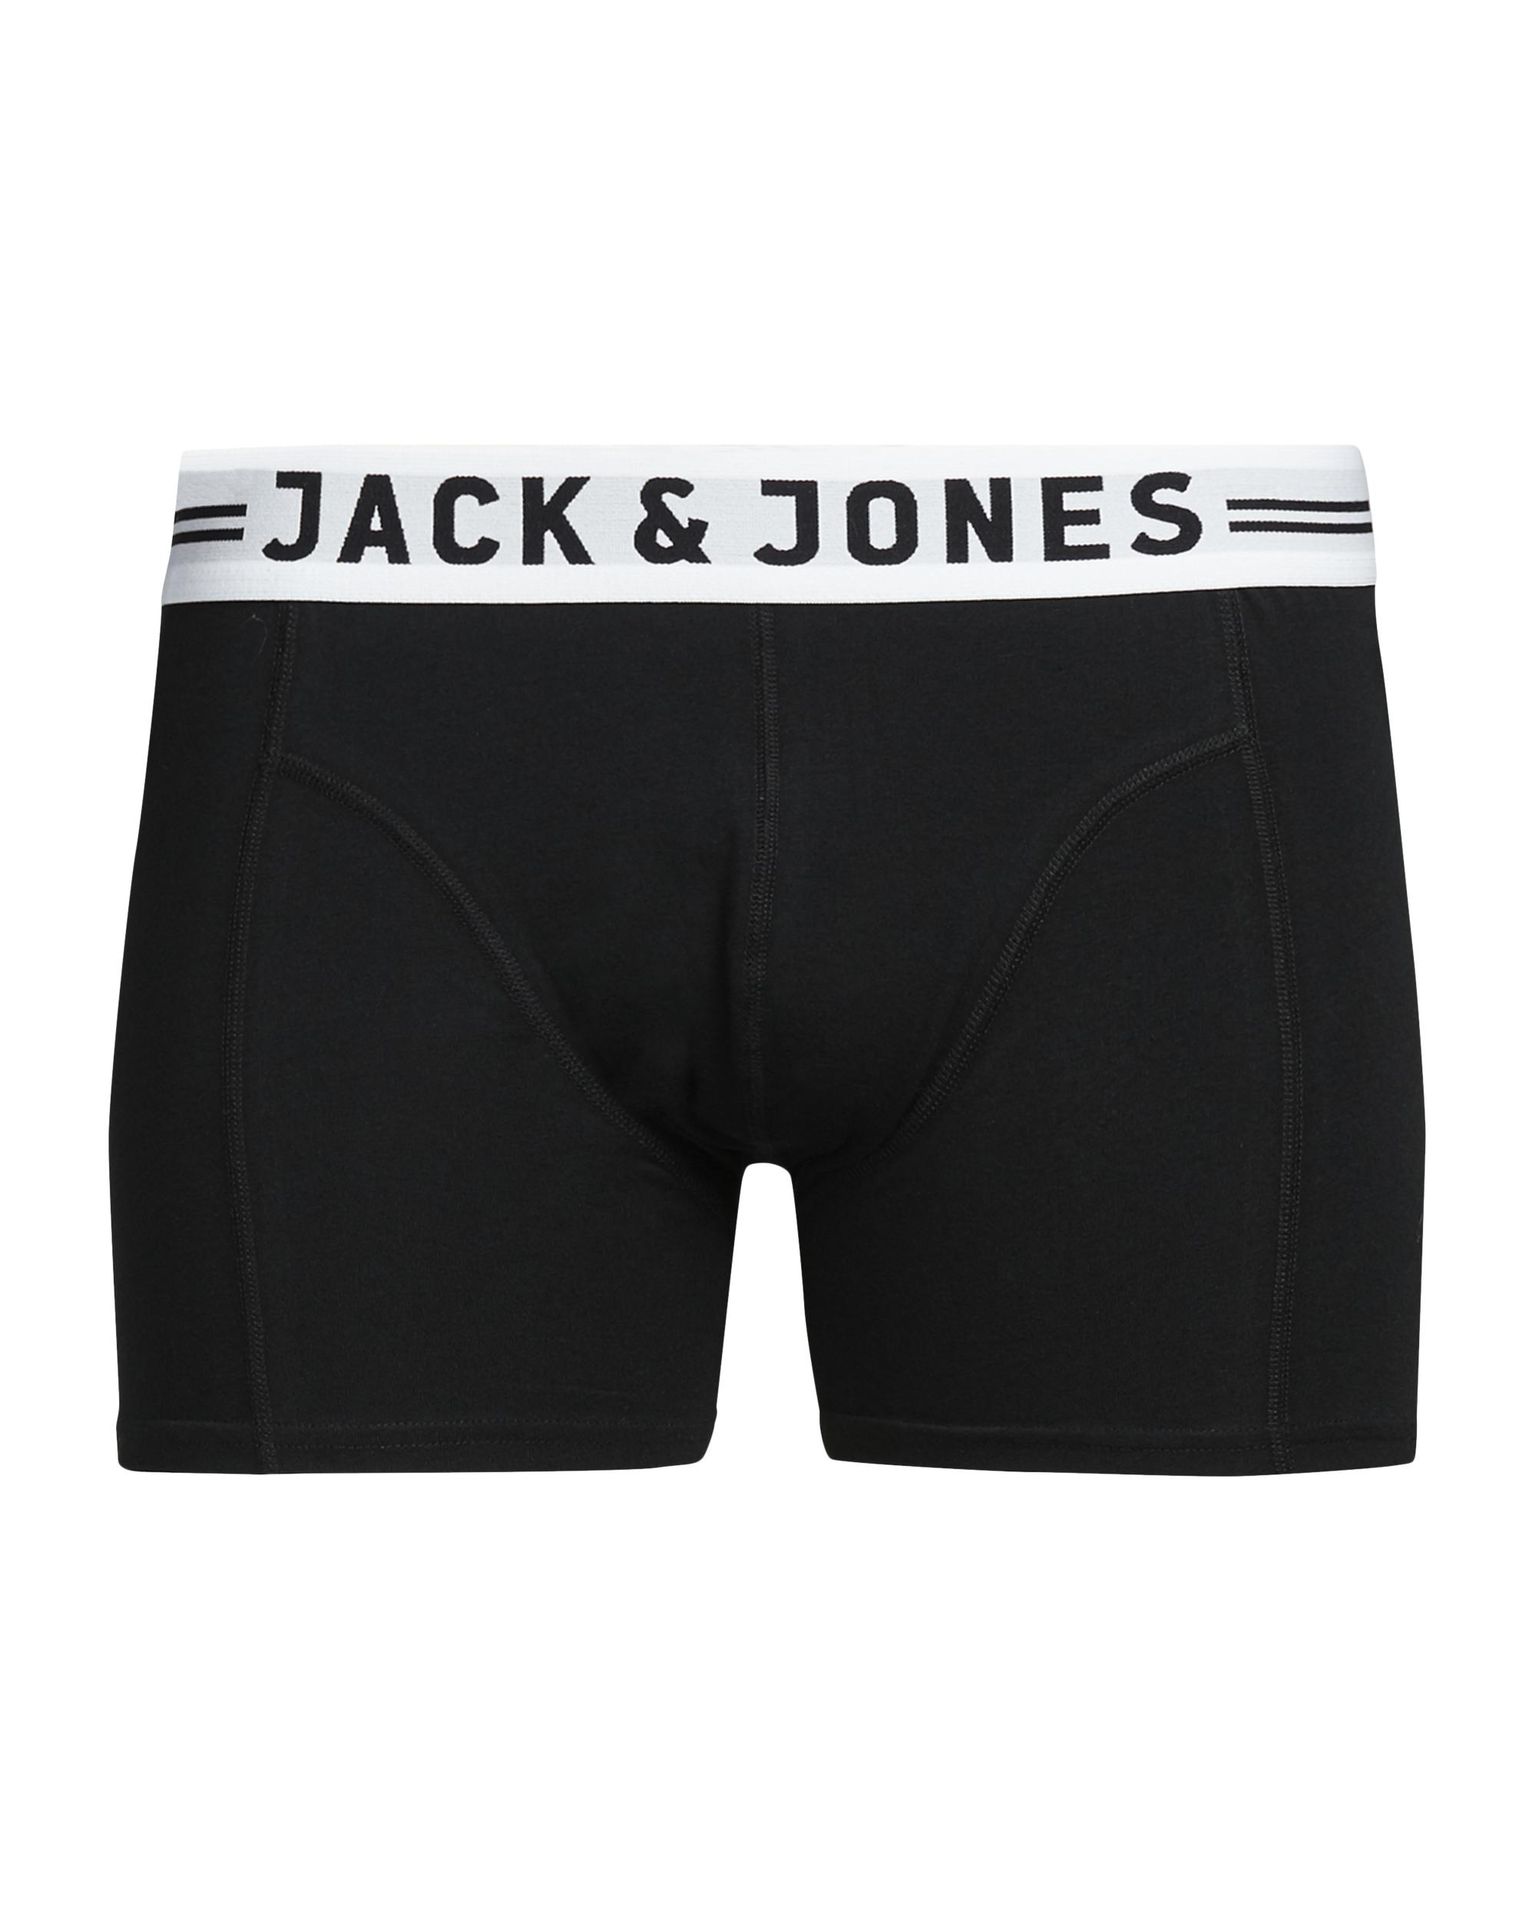 Jack & Jones JACSENSE TRUNKS NOOS - Black Black 00101092-EKA26011400000232